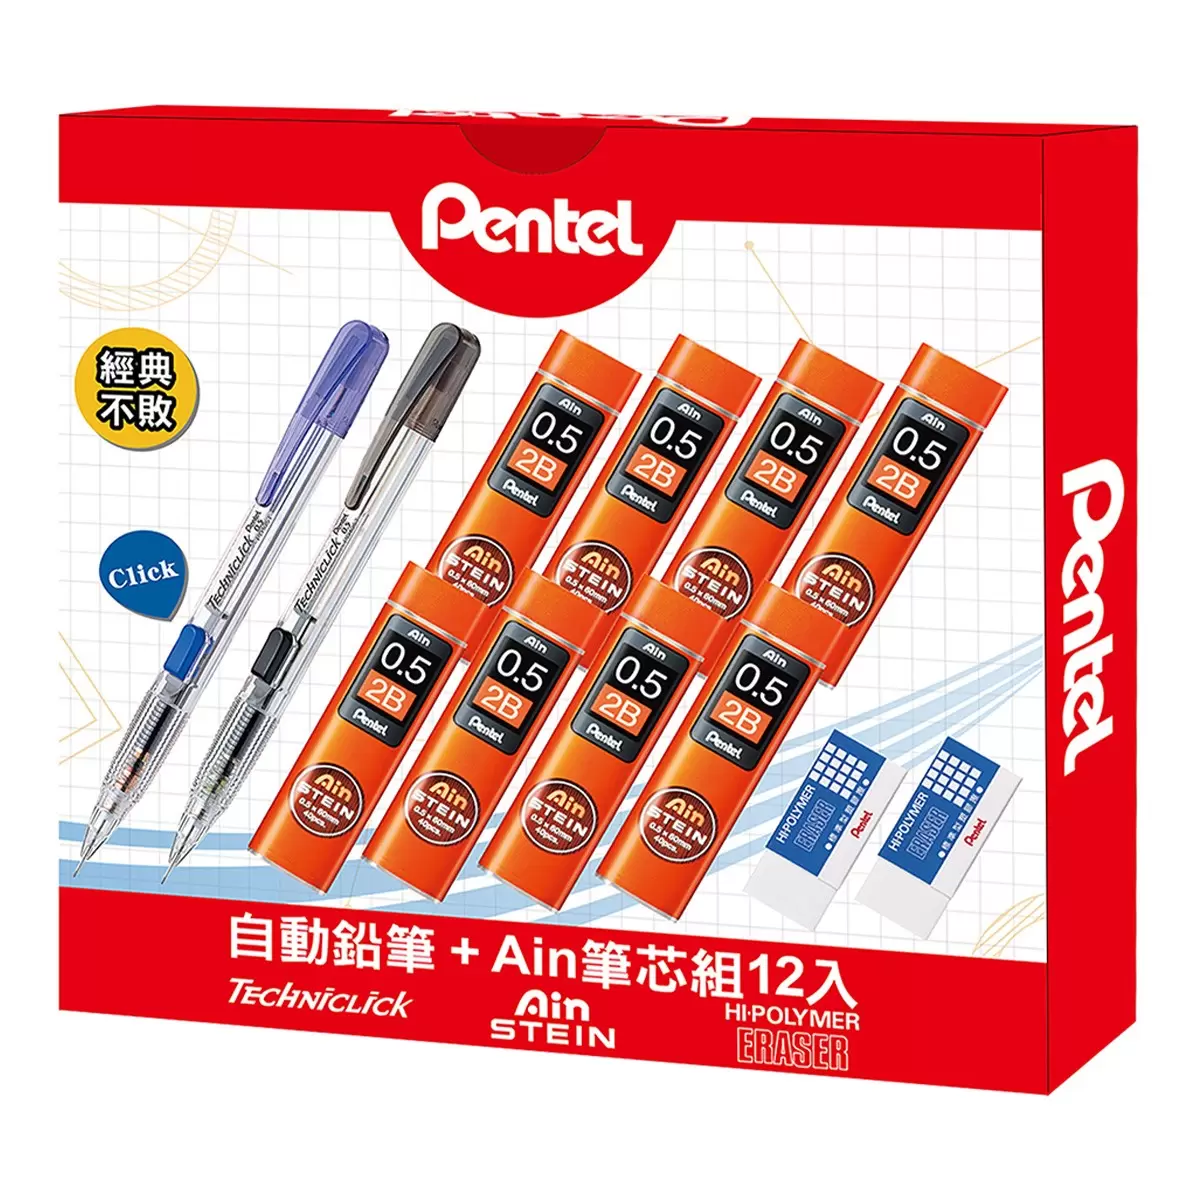 Pentel 自動鉛筆 + Ain STEIN 自動鉛筆芯組 12入組